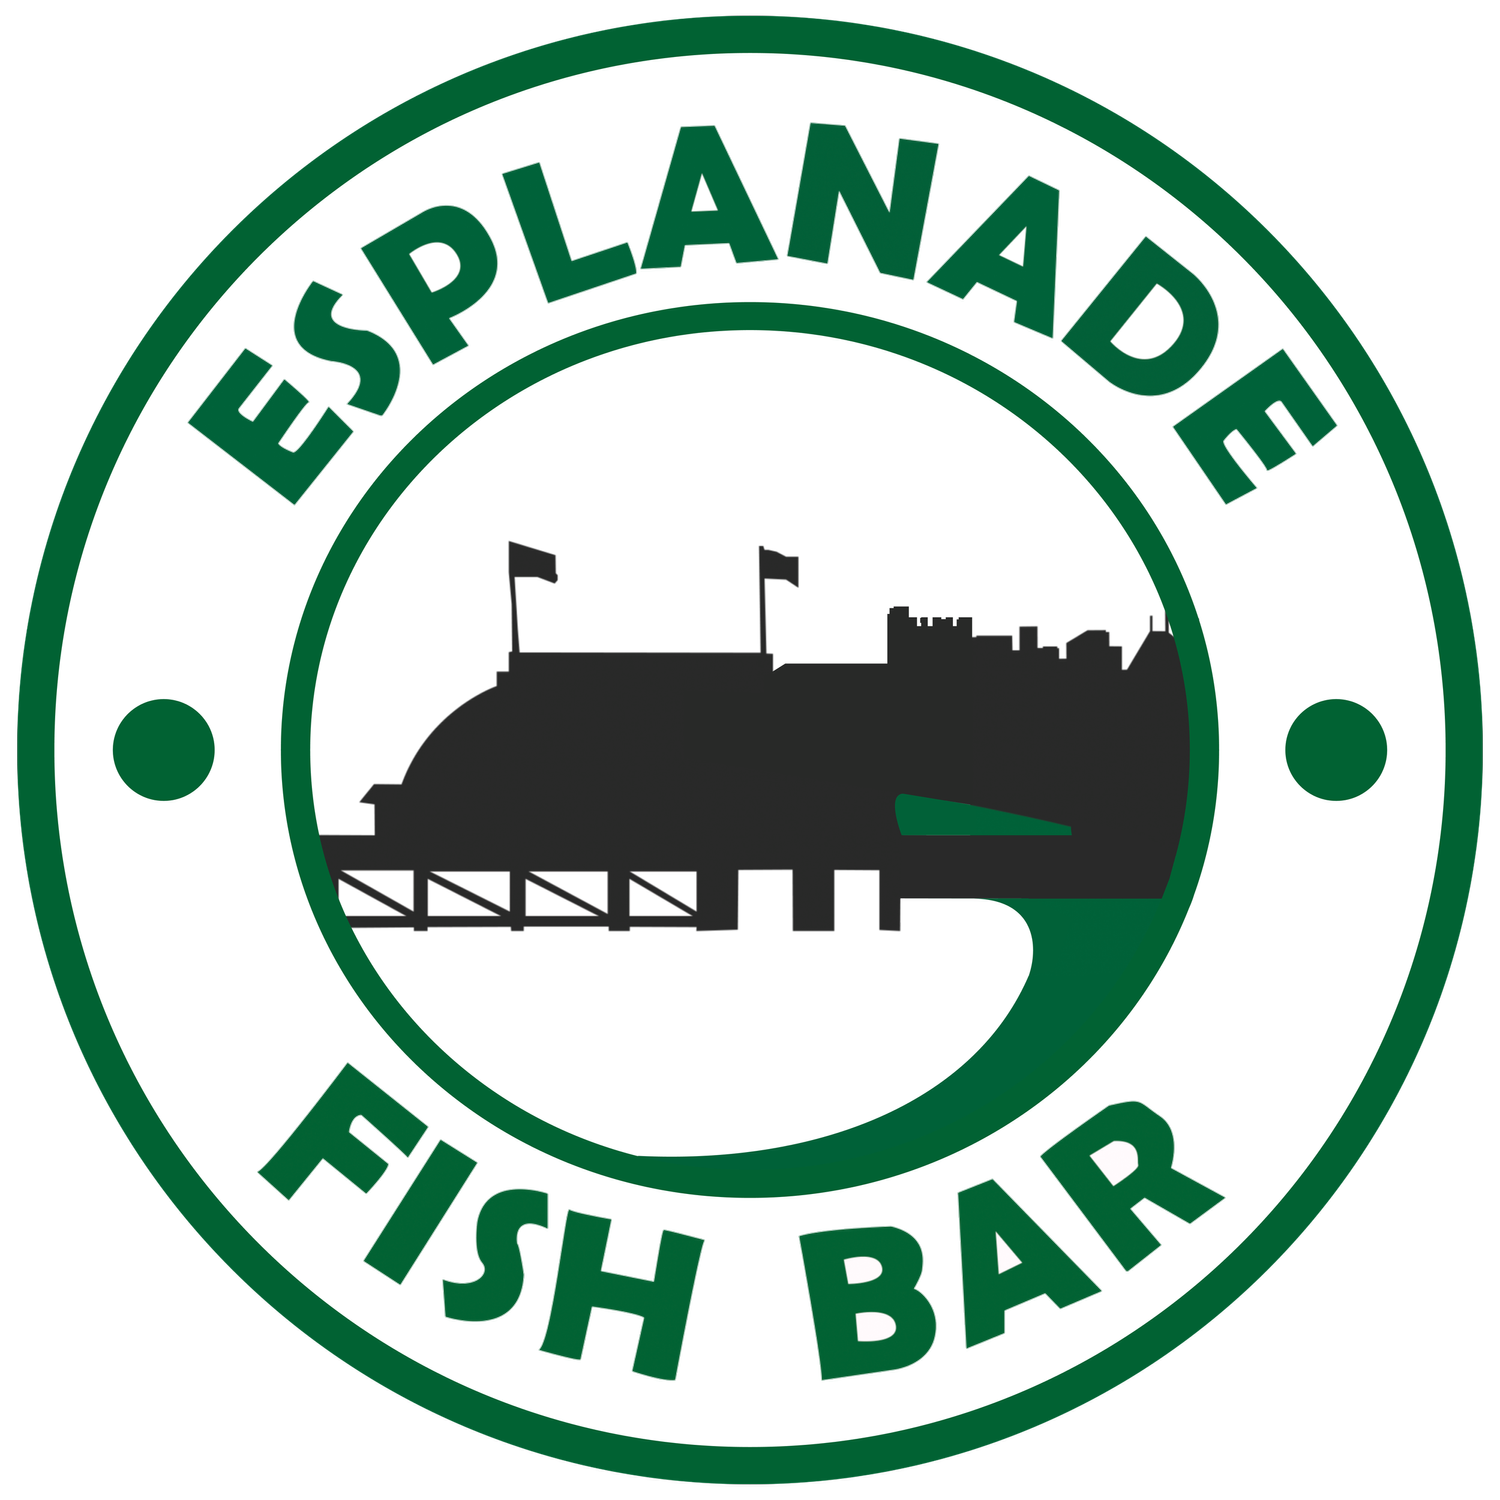 ESPLANADE FISH BAR 